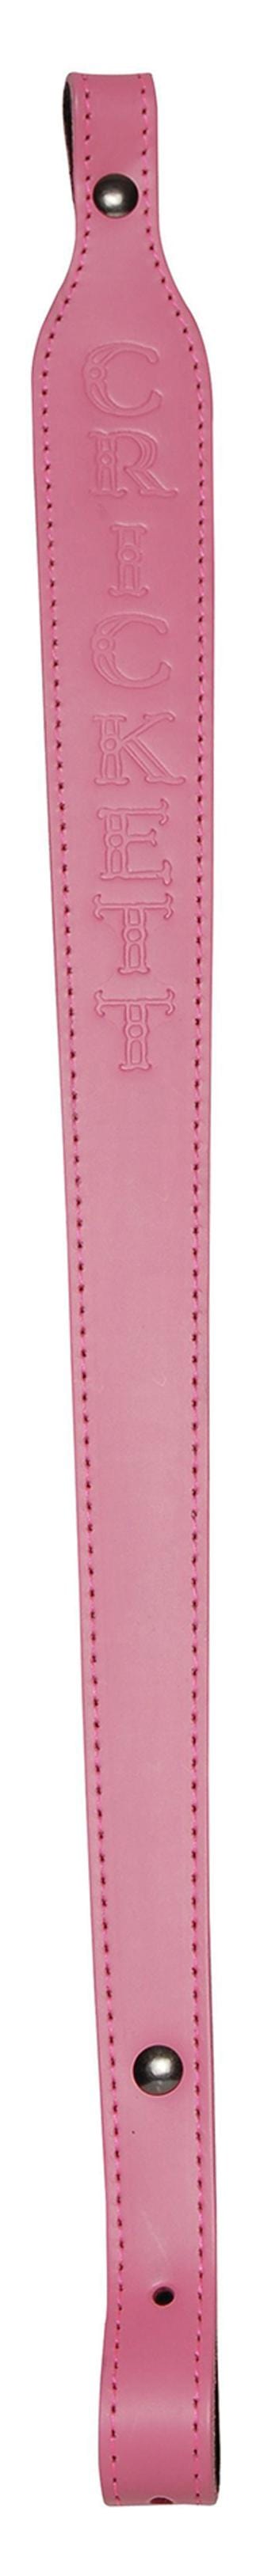 Crickett Crickett Sling Pink Leather - W/crickett Logo Slings